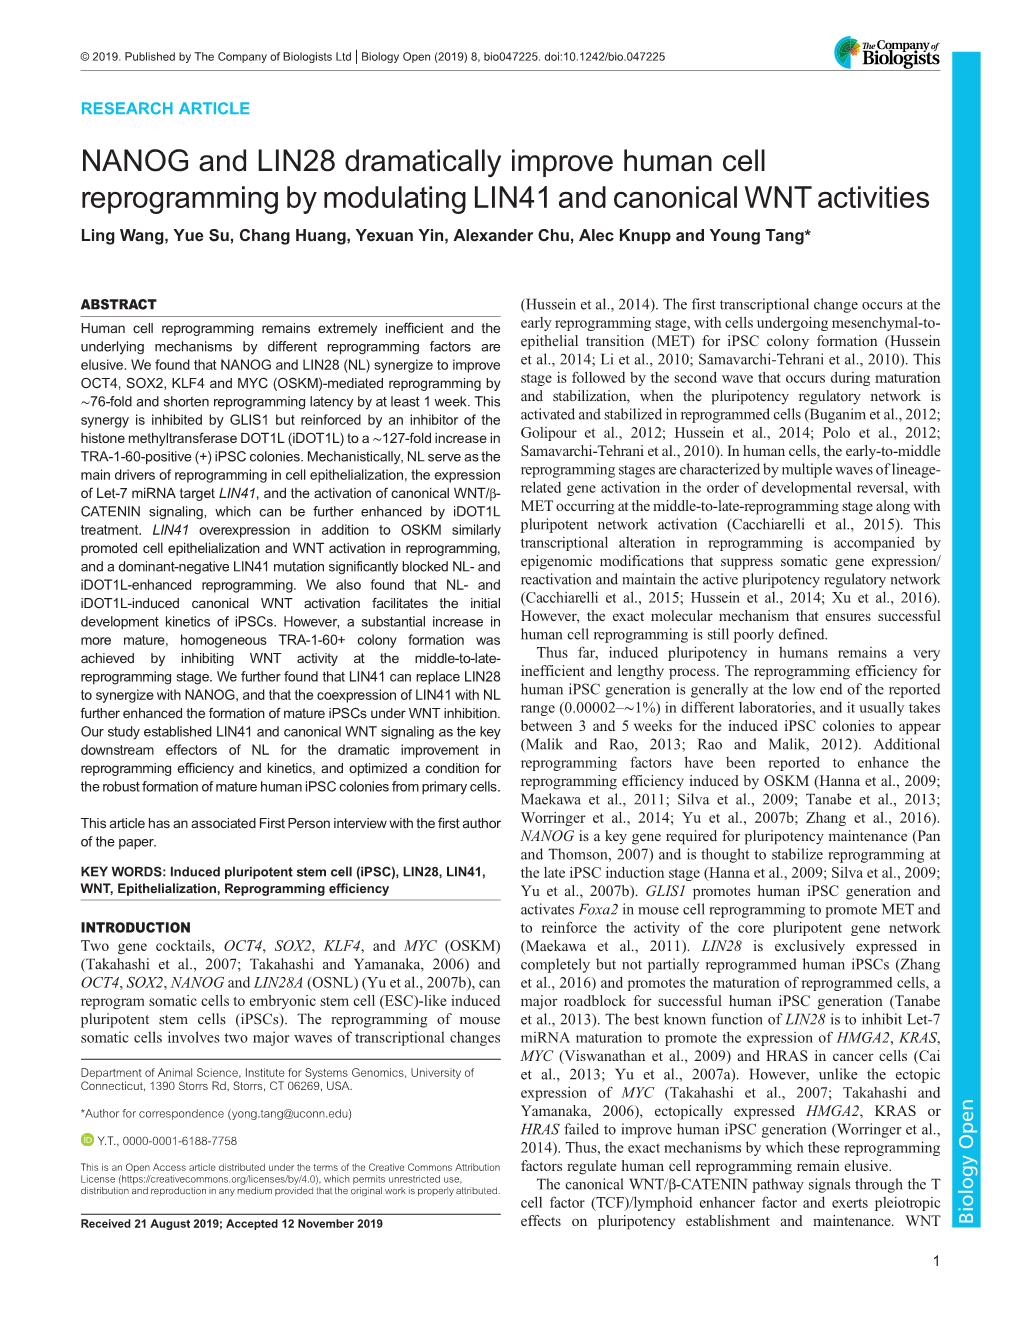 NANOG and LIN28 Dramatically Improve Human Cell Reprogramming